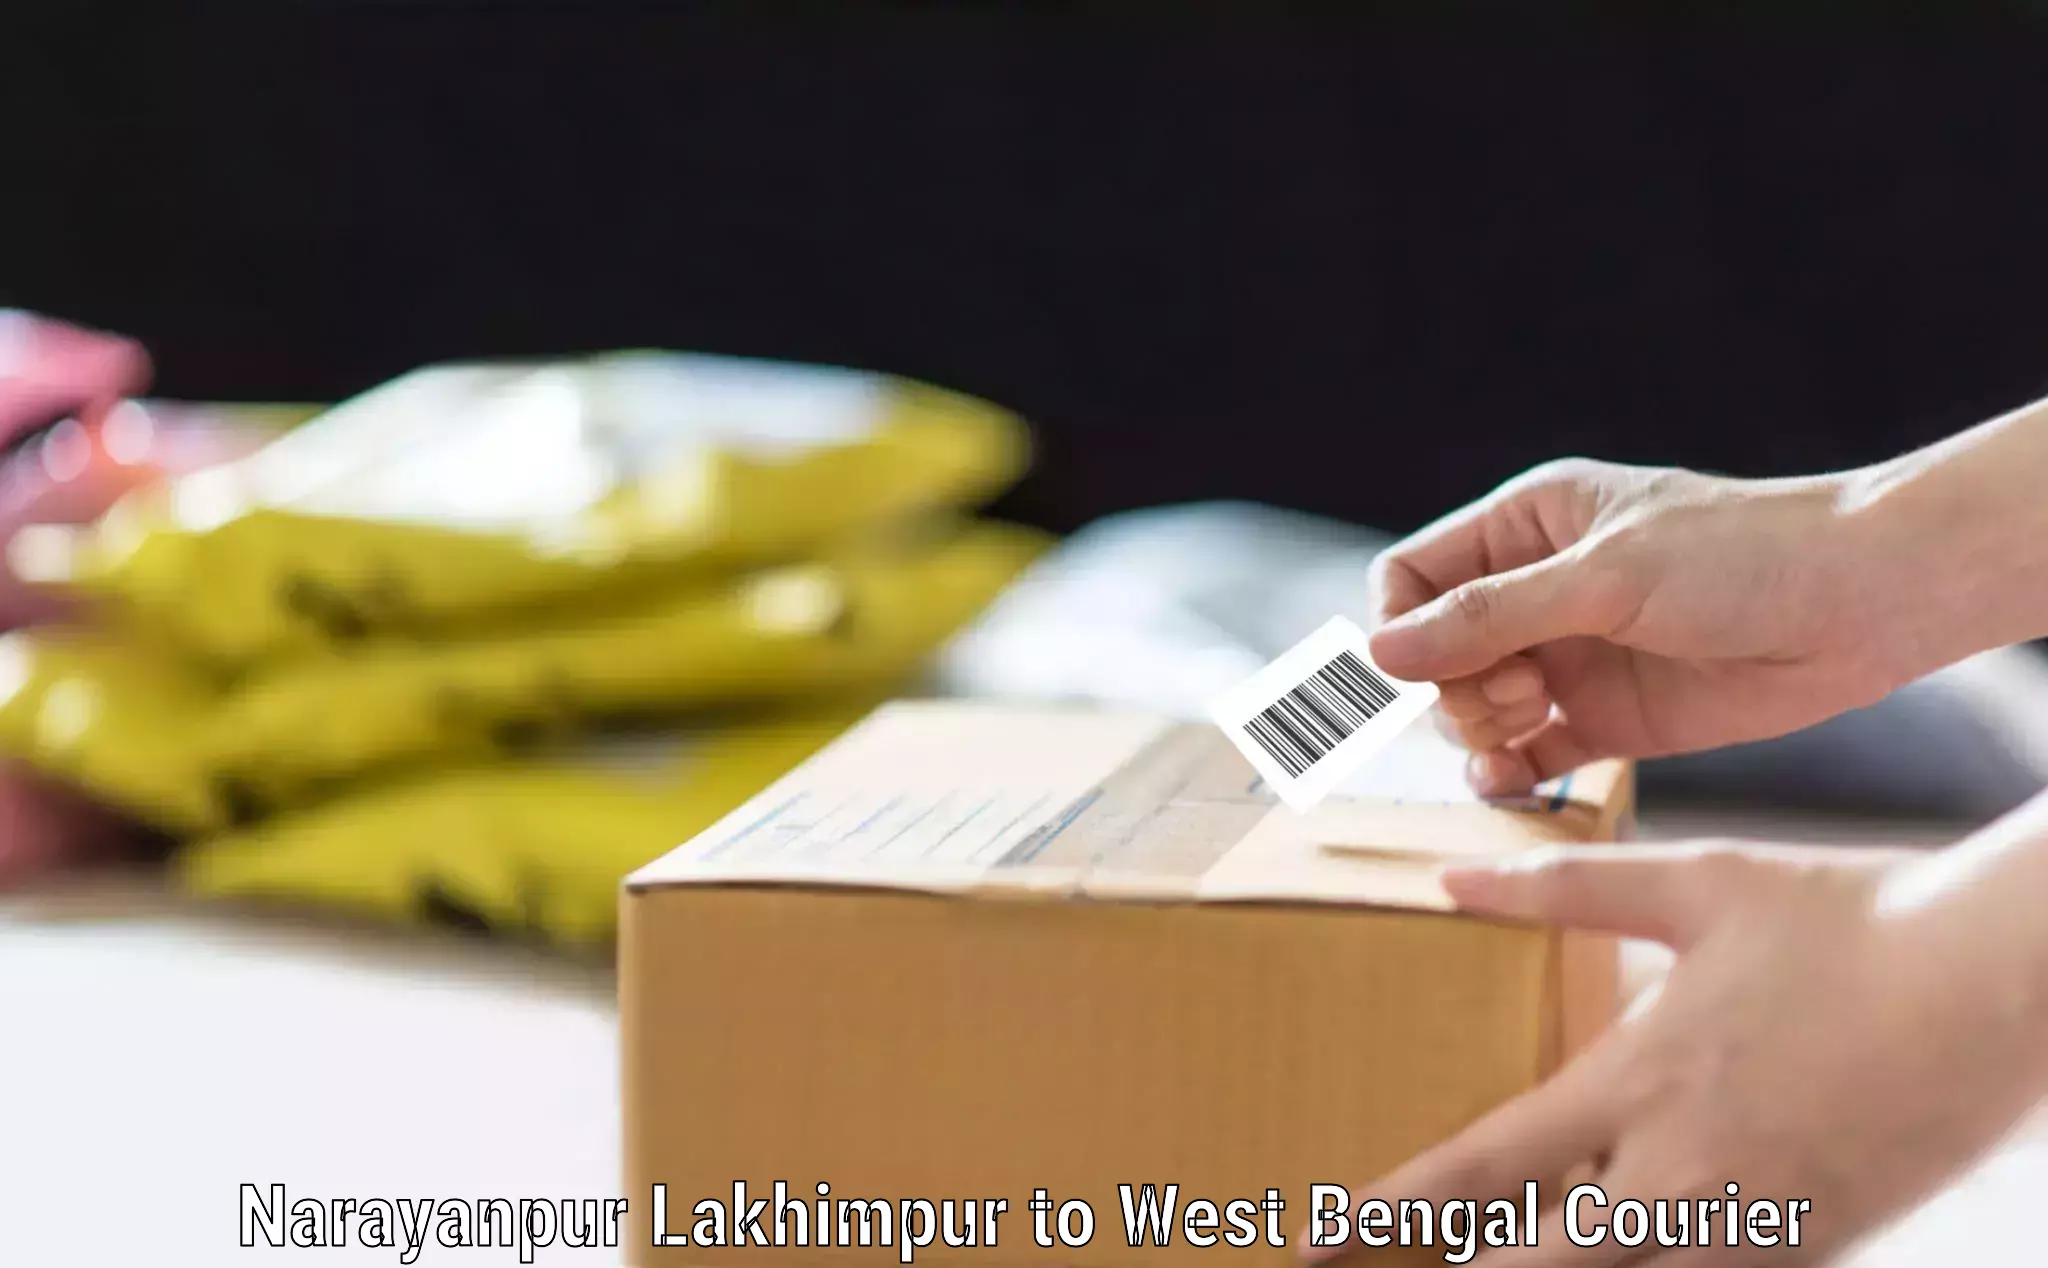 Baggage shipping experience Narayanpur Lakhimpur to Chhatna